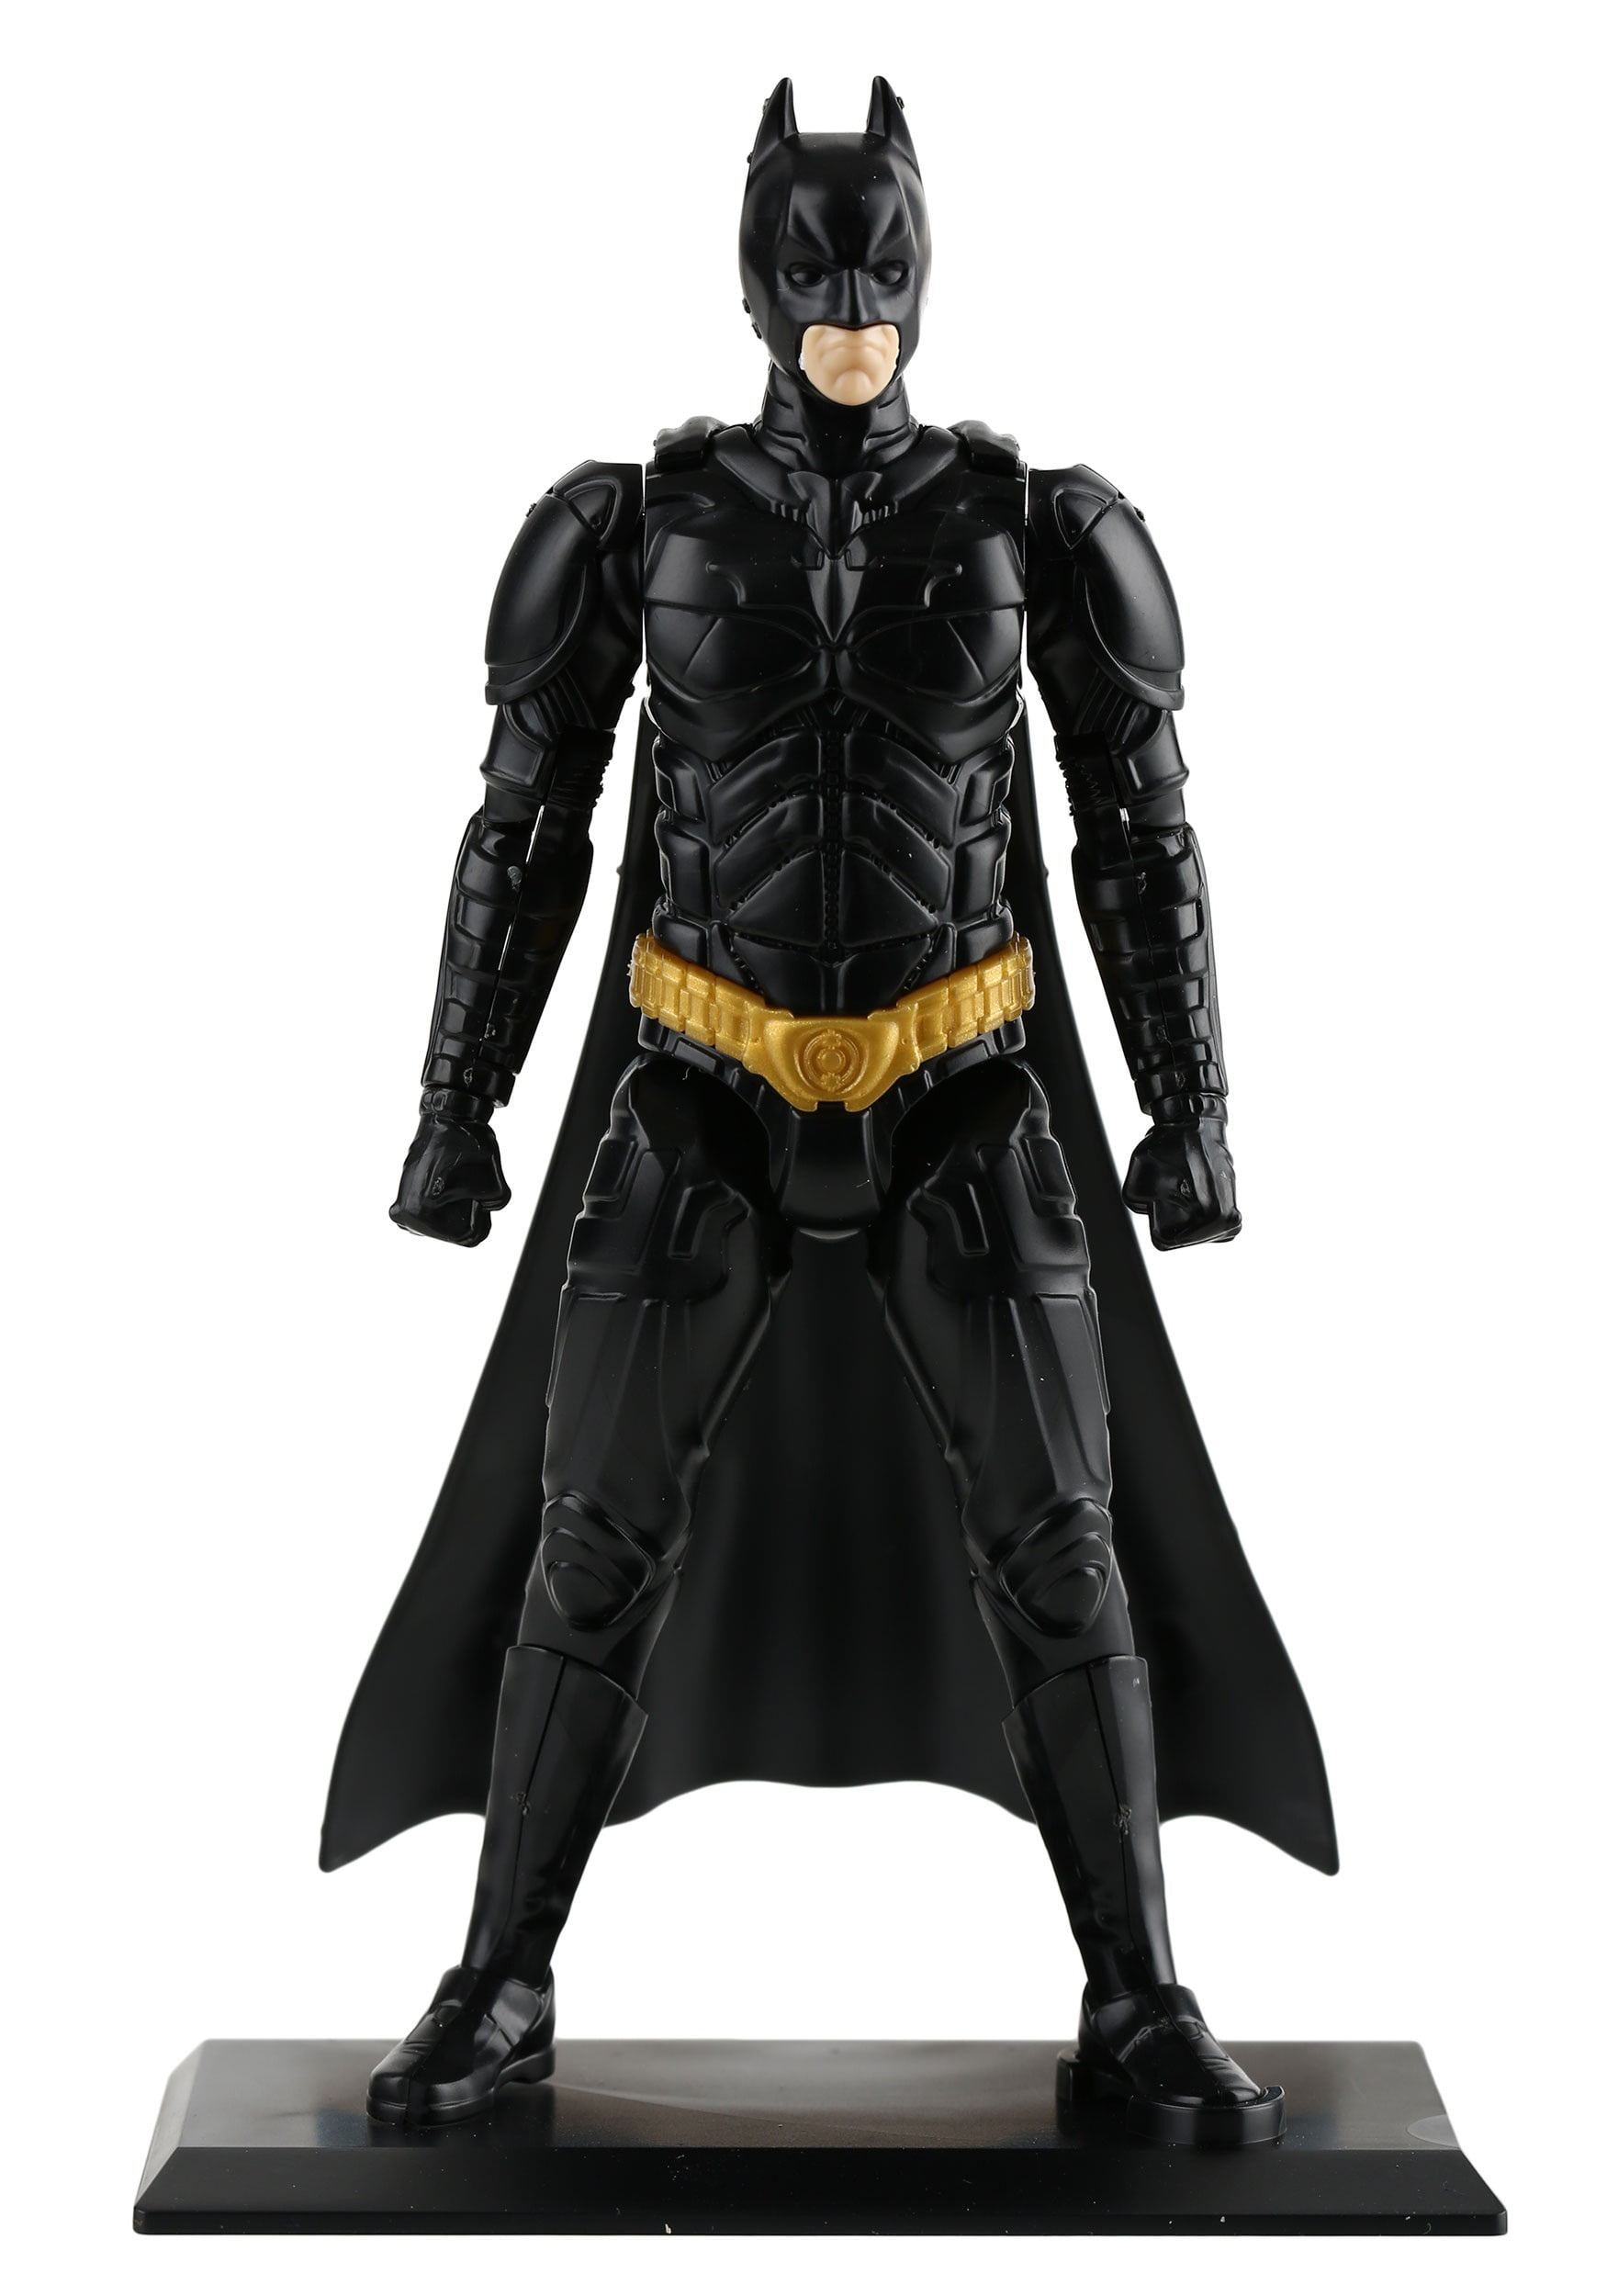 Sprukits Dc Comics The Dark Knight Rises Batman Action Figure Model Kit,  Level 1